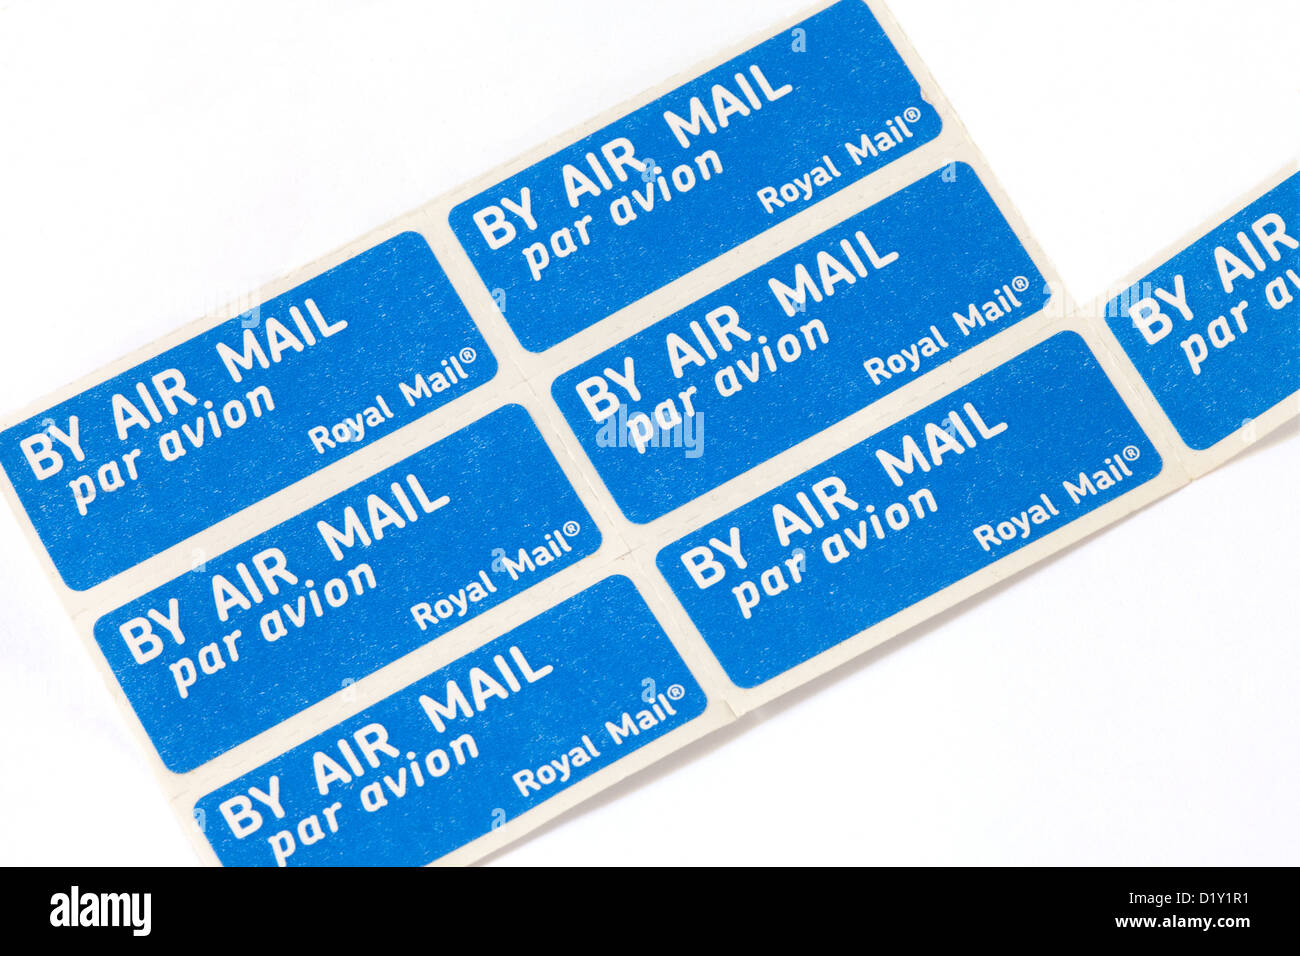 Air Mail par avion lettera francobollo adesivo di francobolli autoadesivi, REGNO UNITO Foto Stock